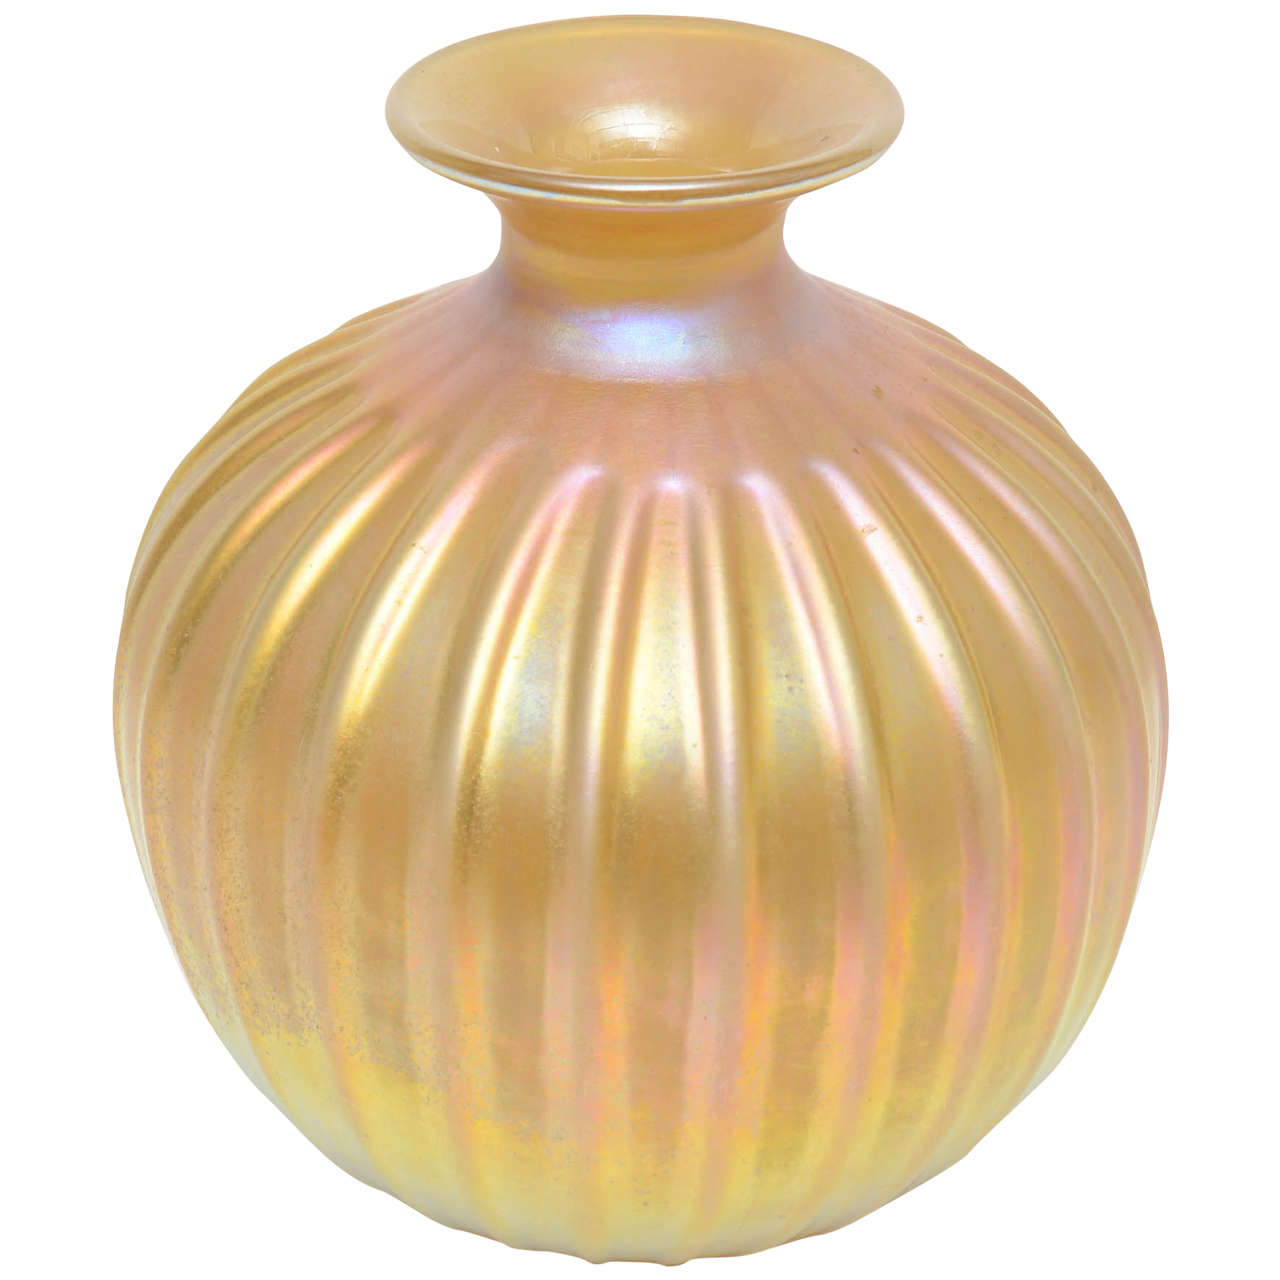 Gold Iridescent Murano Vase